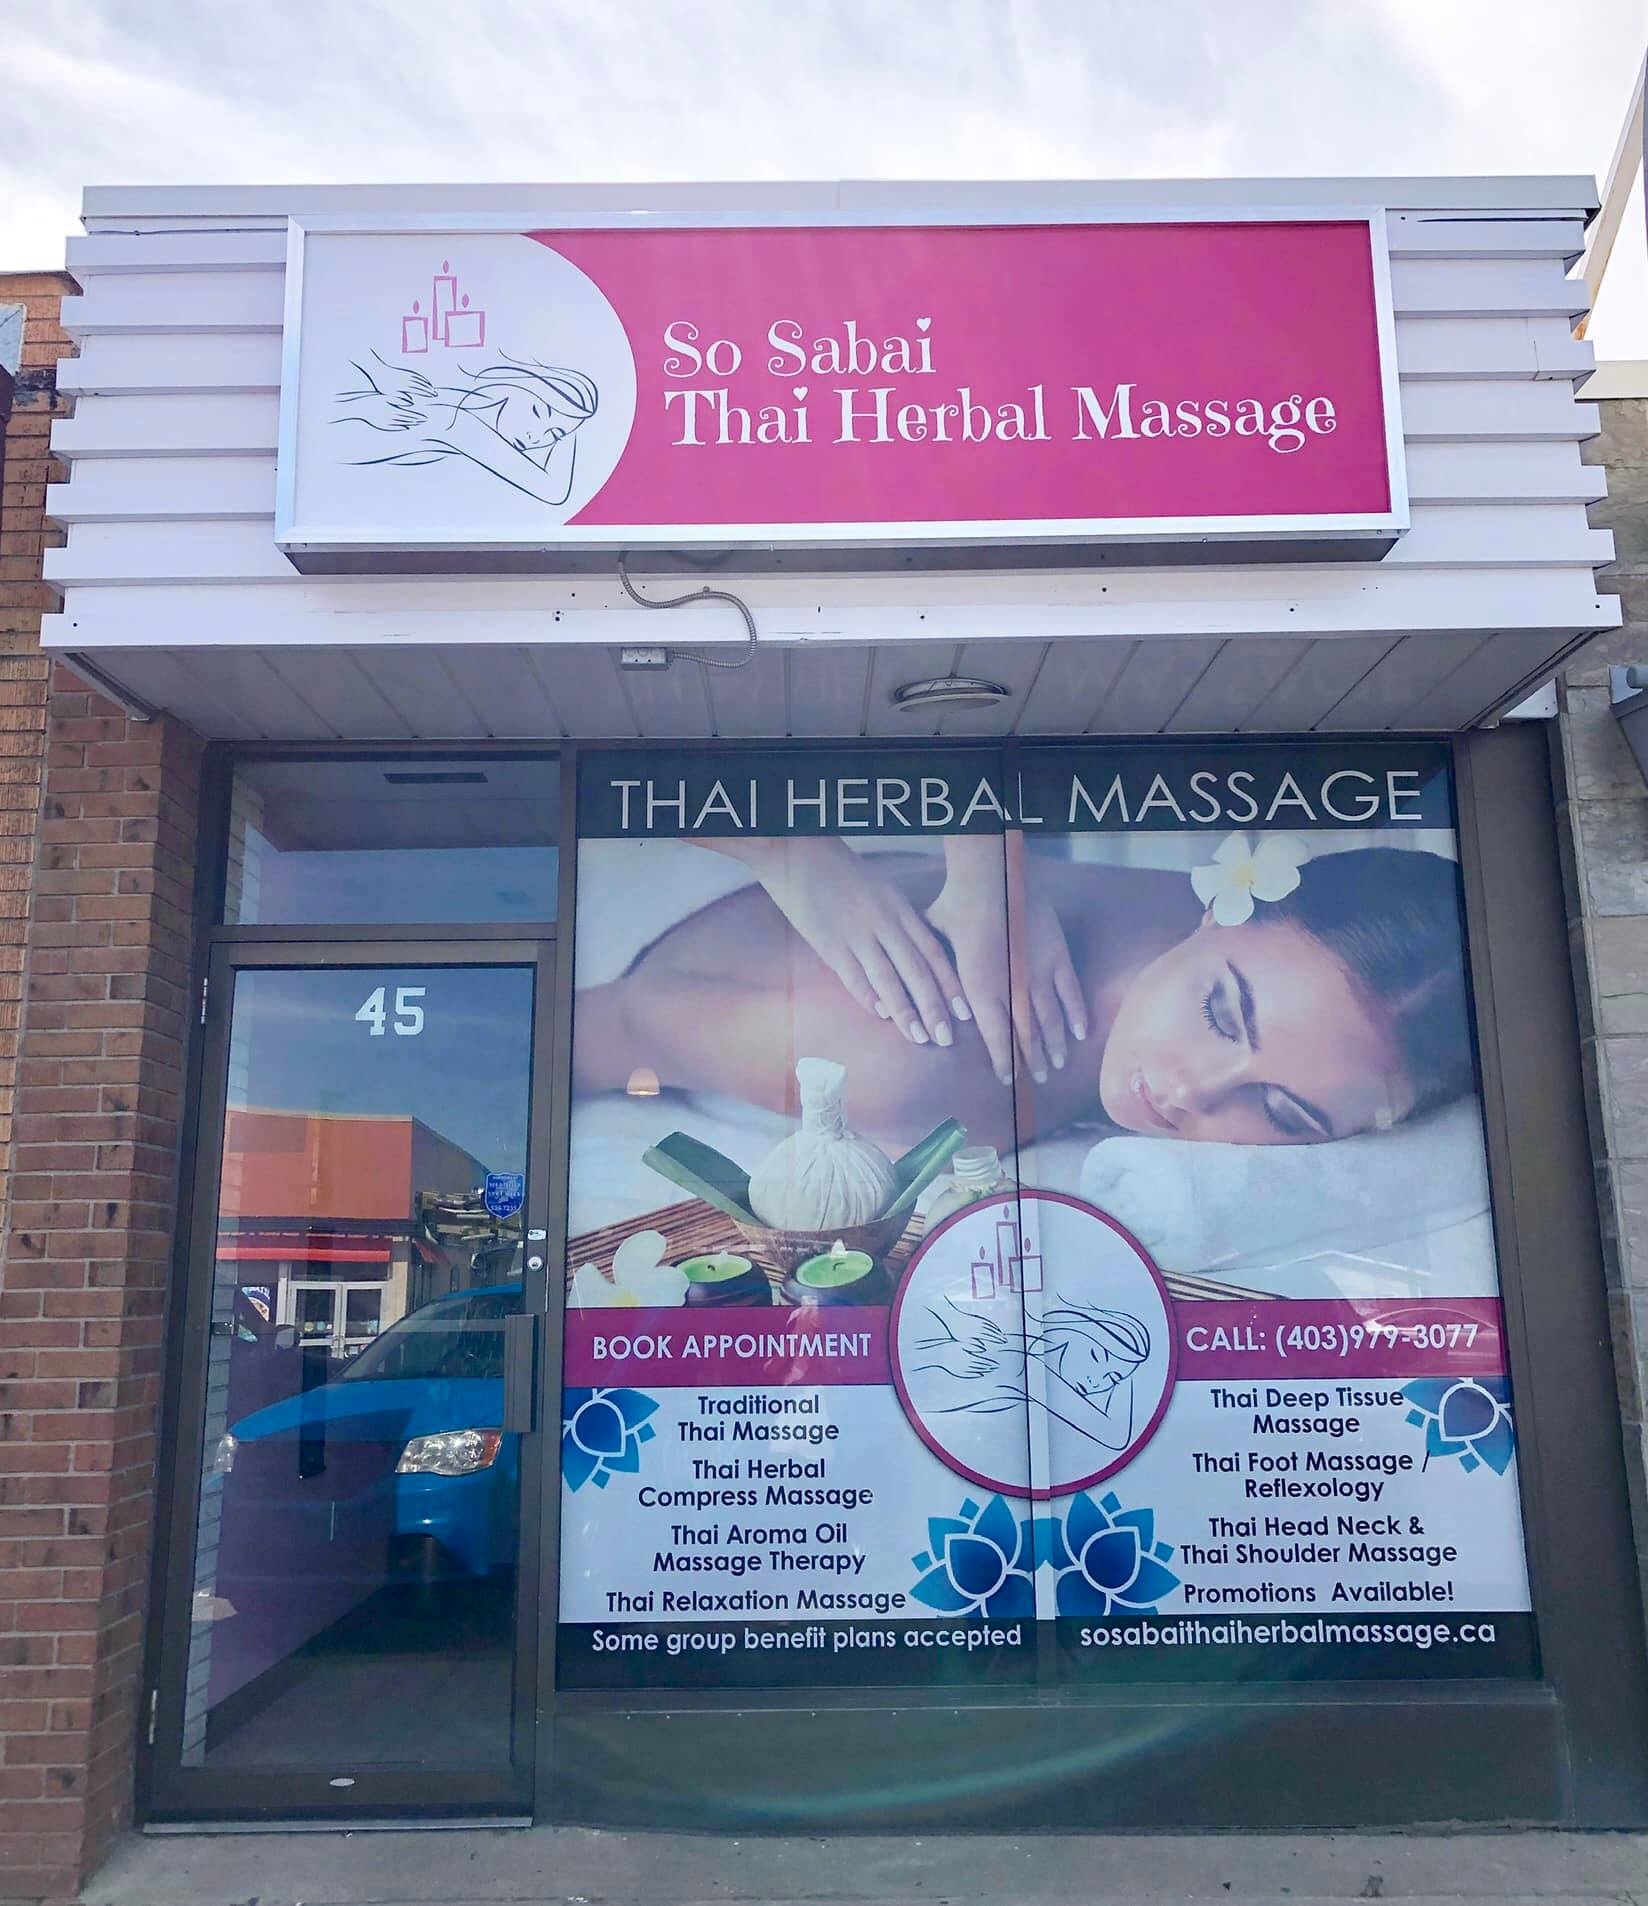 So Sabai Thai Herbal Massage